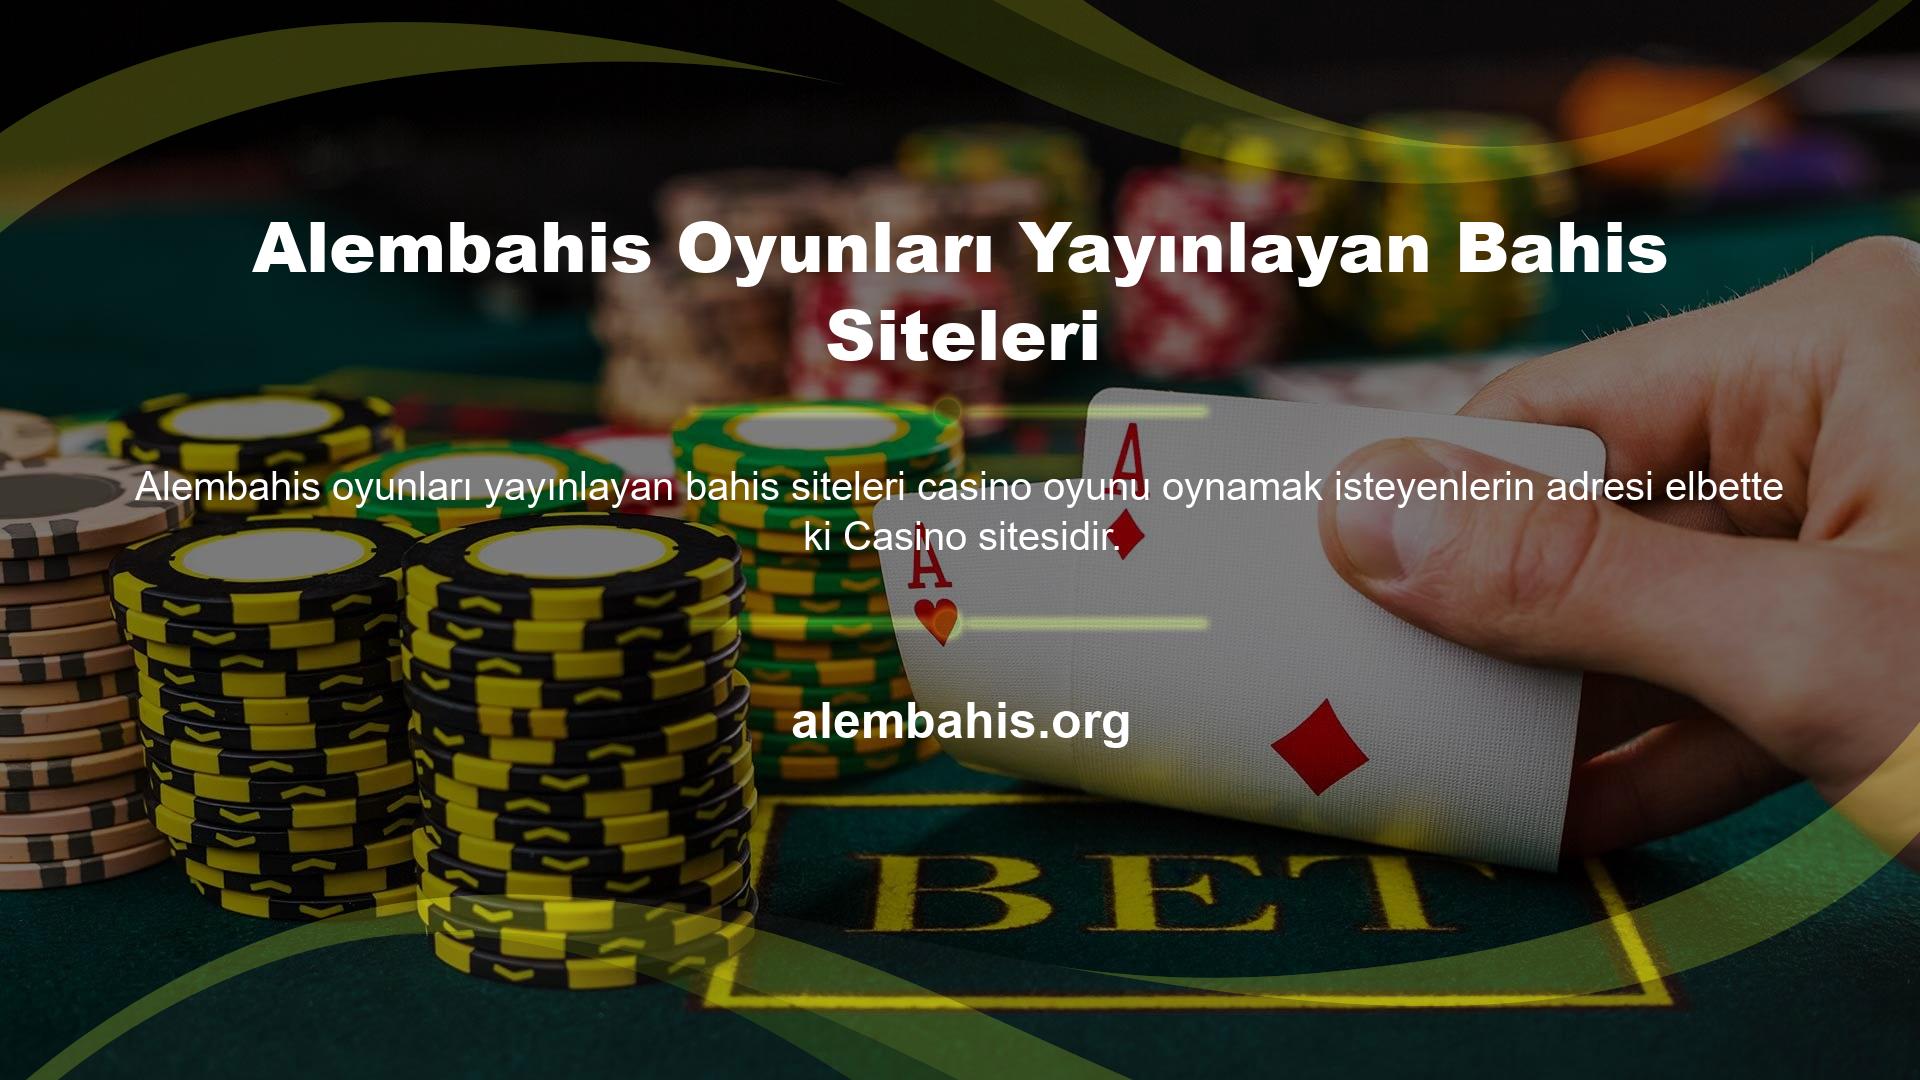 Alembahis Casino oyunlarını yayınlayan bahis sitelerindeki oyunların temelini spor müsabakaları oluşturmaktadır